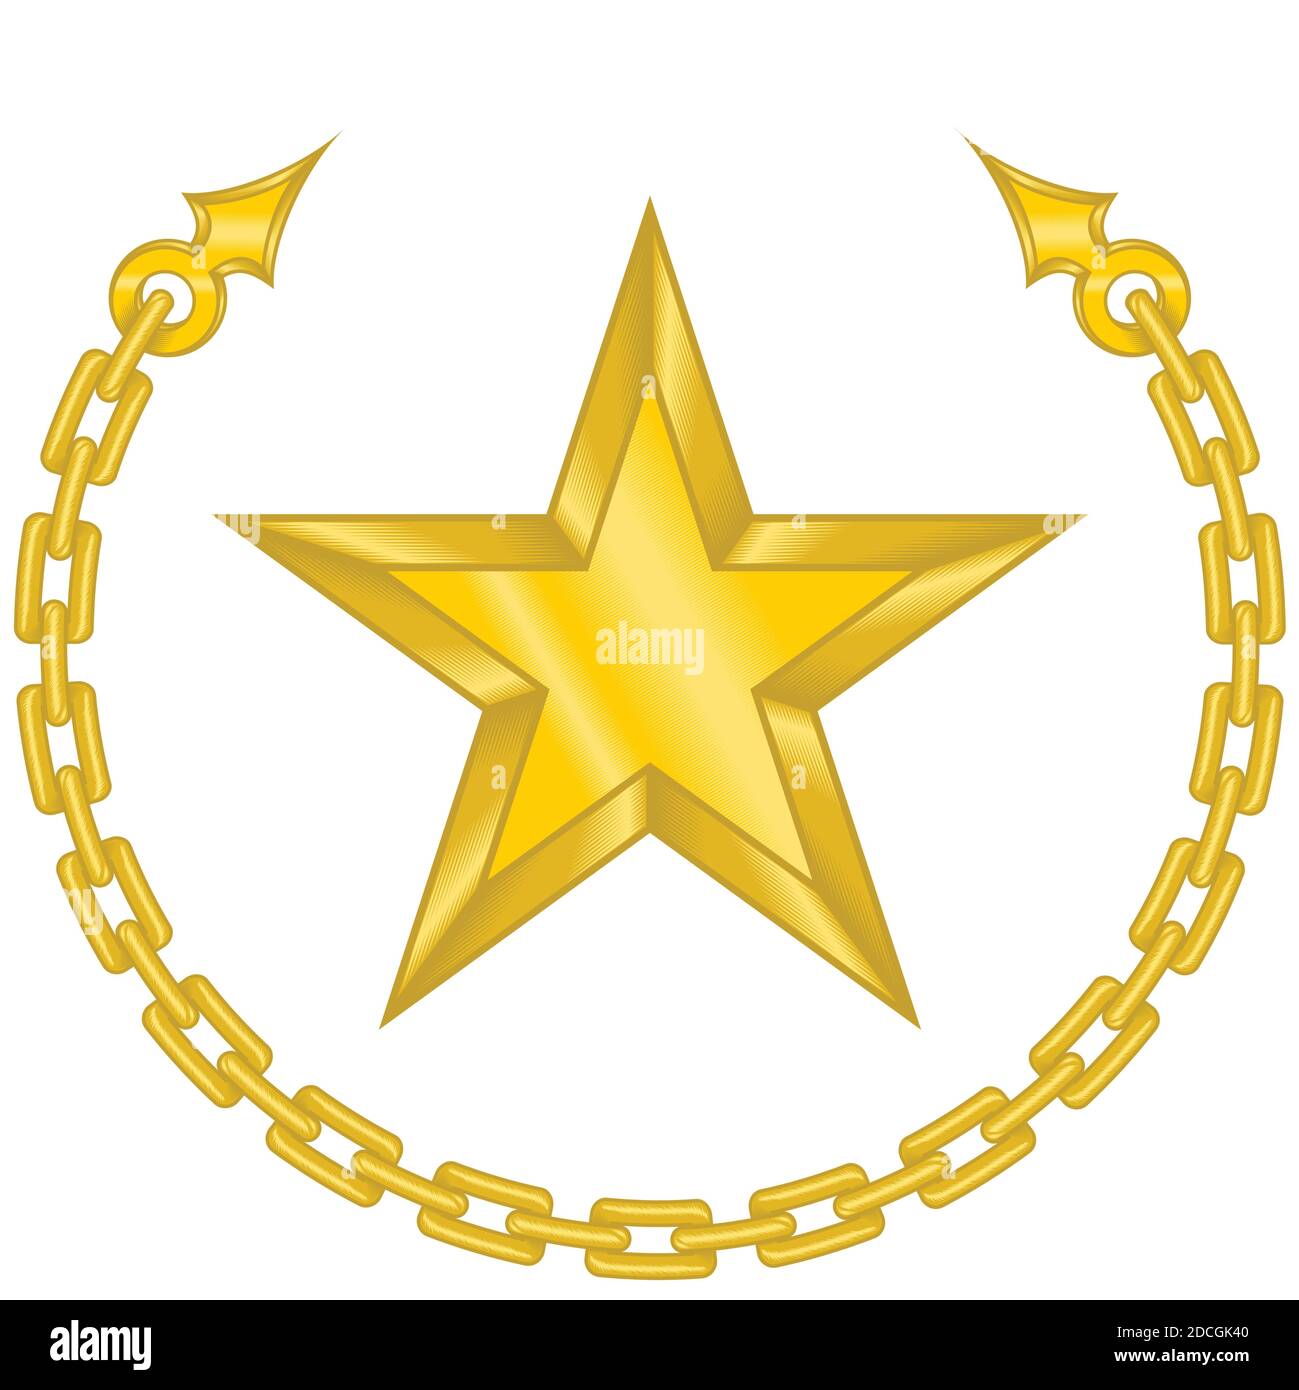 Vektor-Design eines Sterns von Kette in Goldfarbe umgeben. Alles auf weißem Hintergrund. Stock Vektor